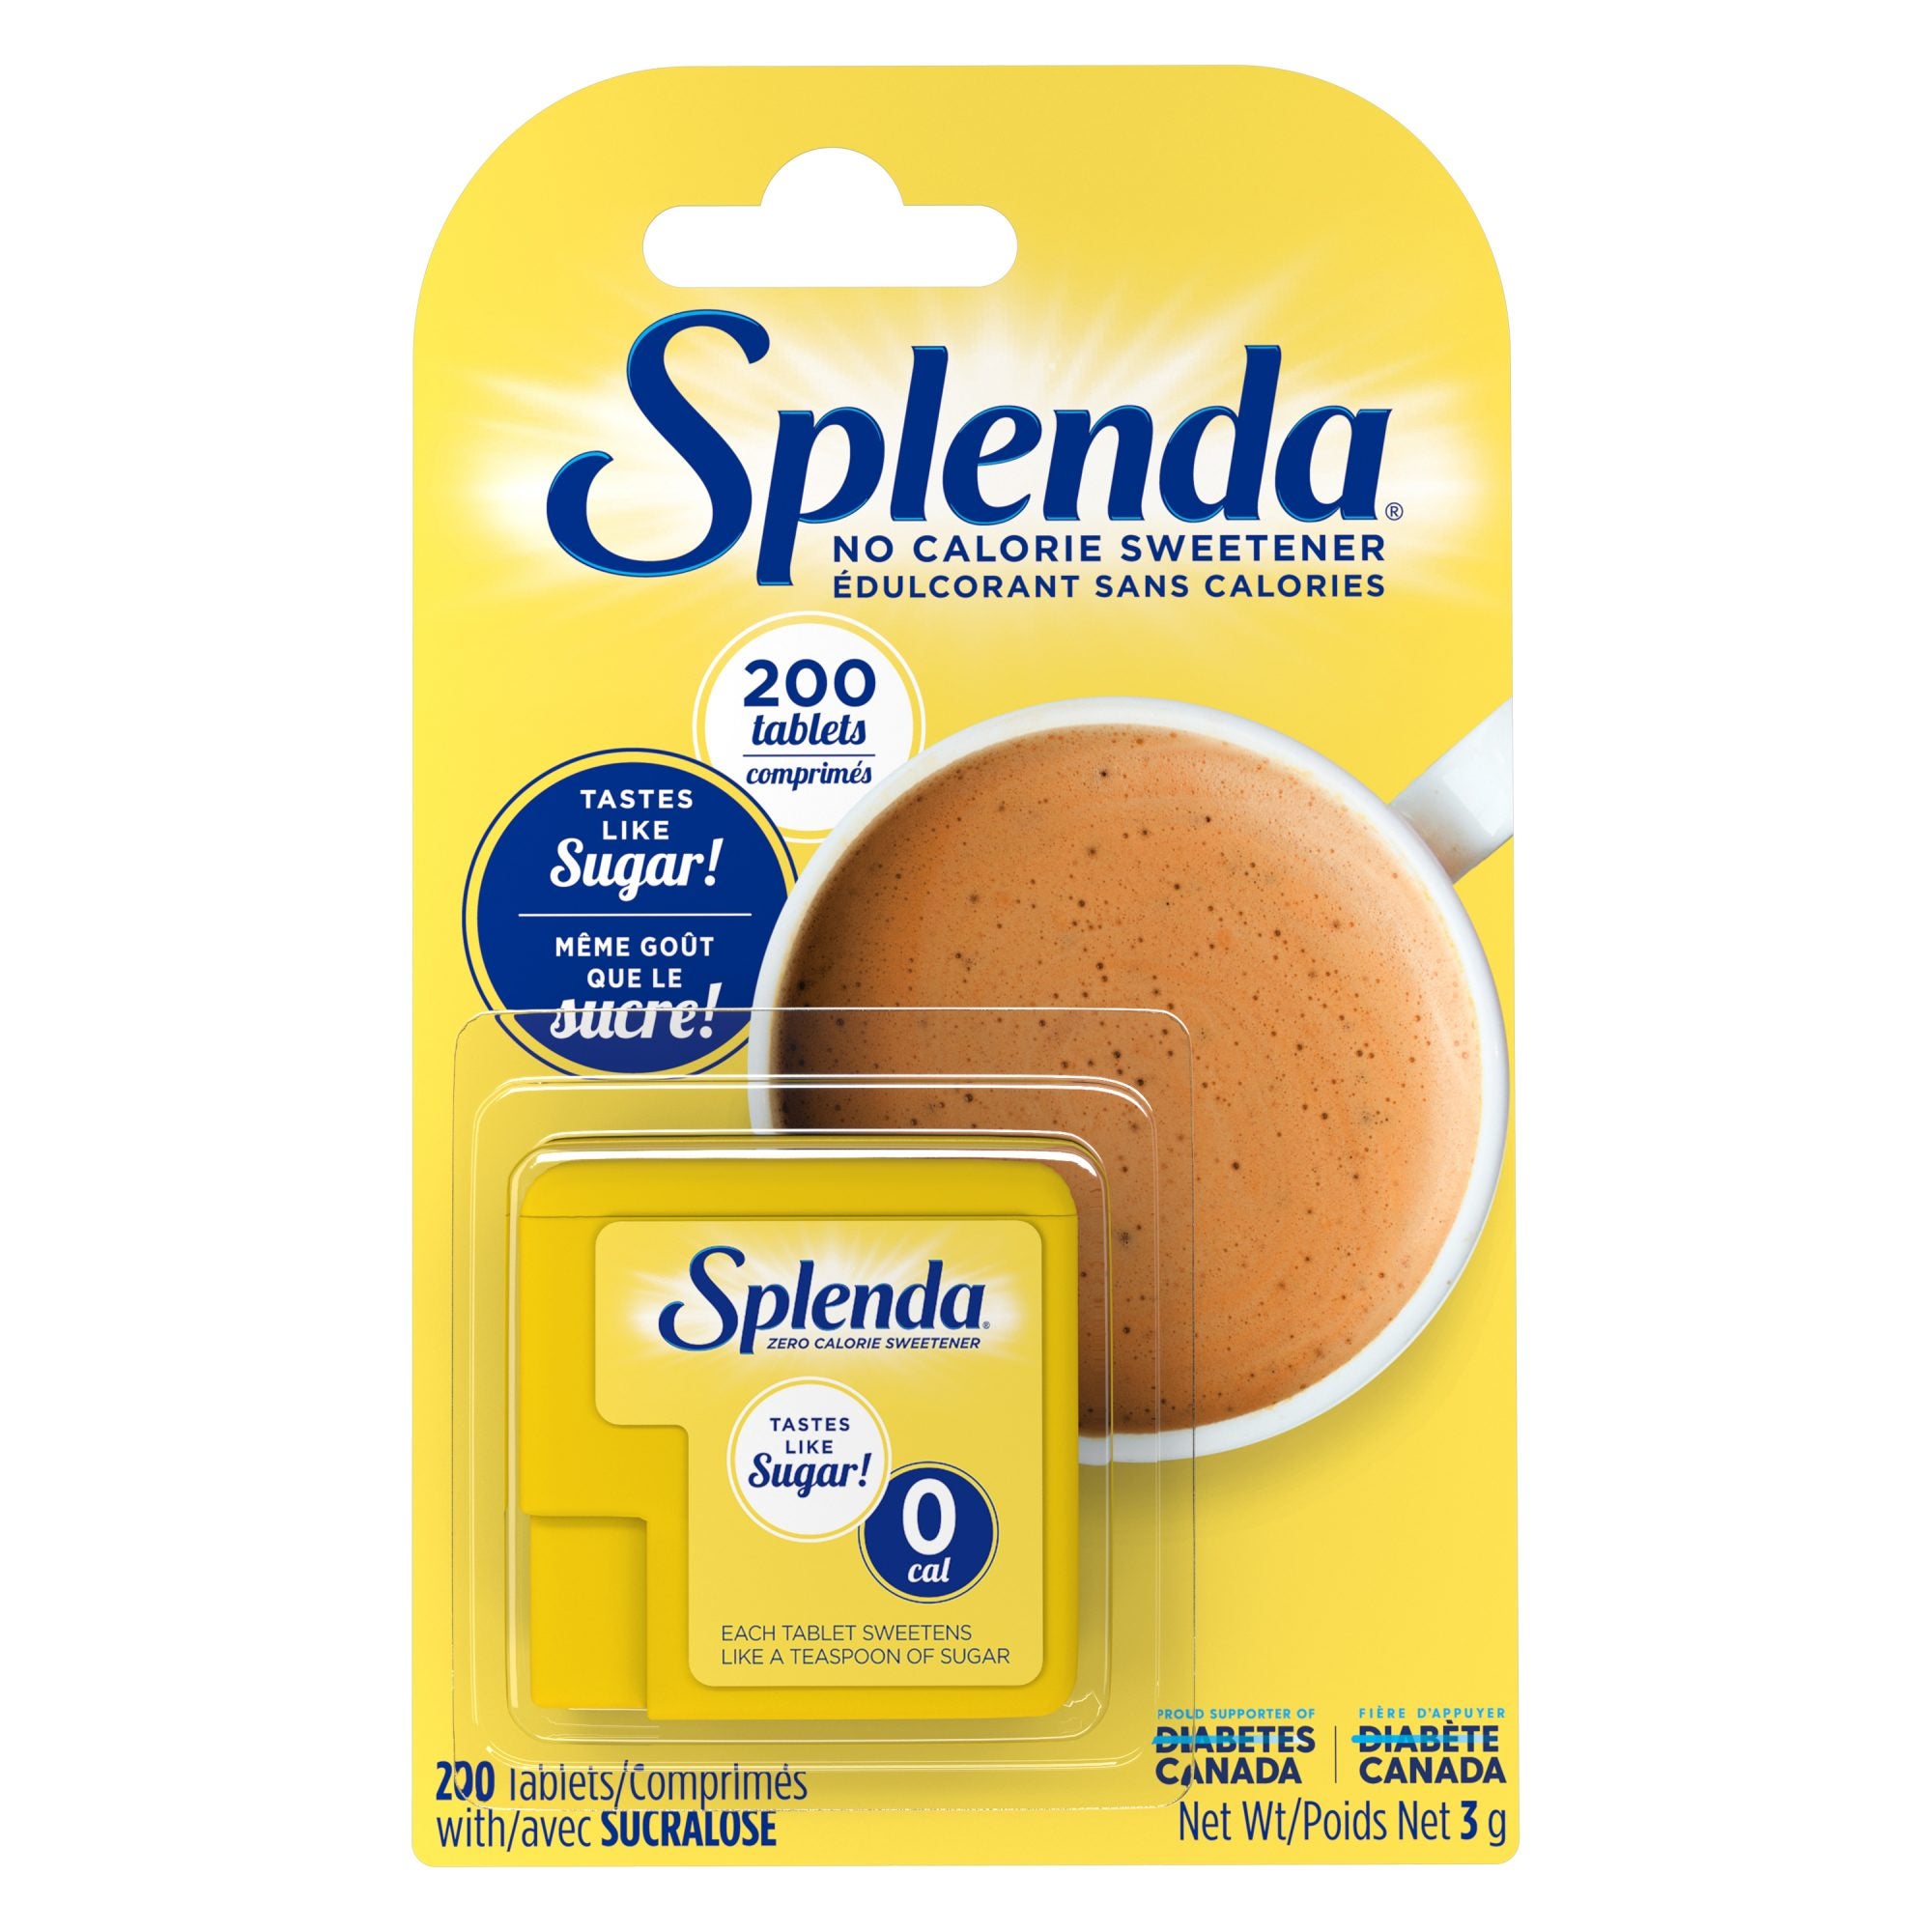 Paquets d'édulcorant Splenda  Édulcorant sans calories et succédané de  sucre